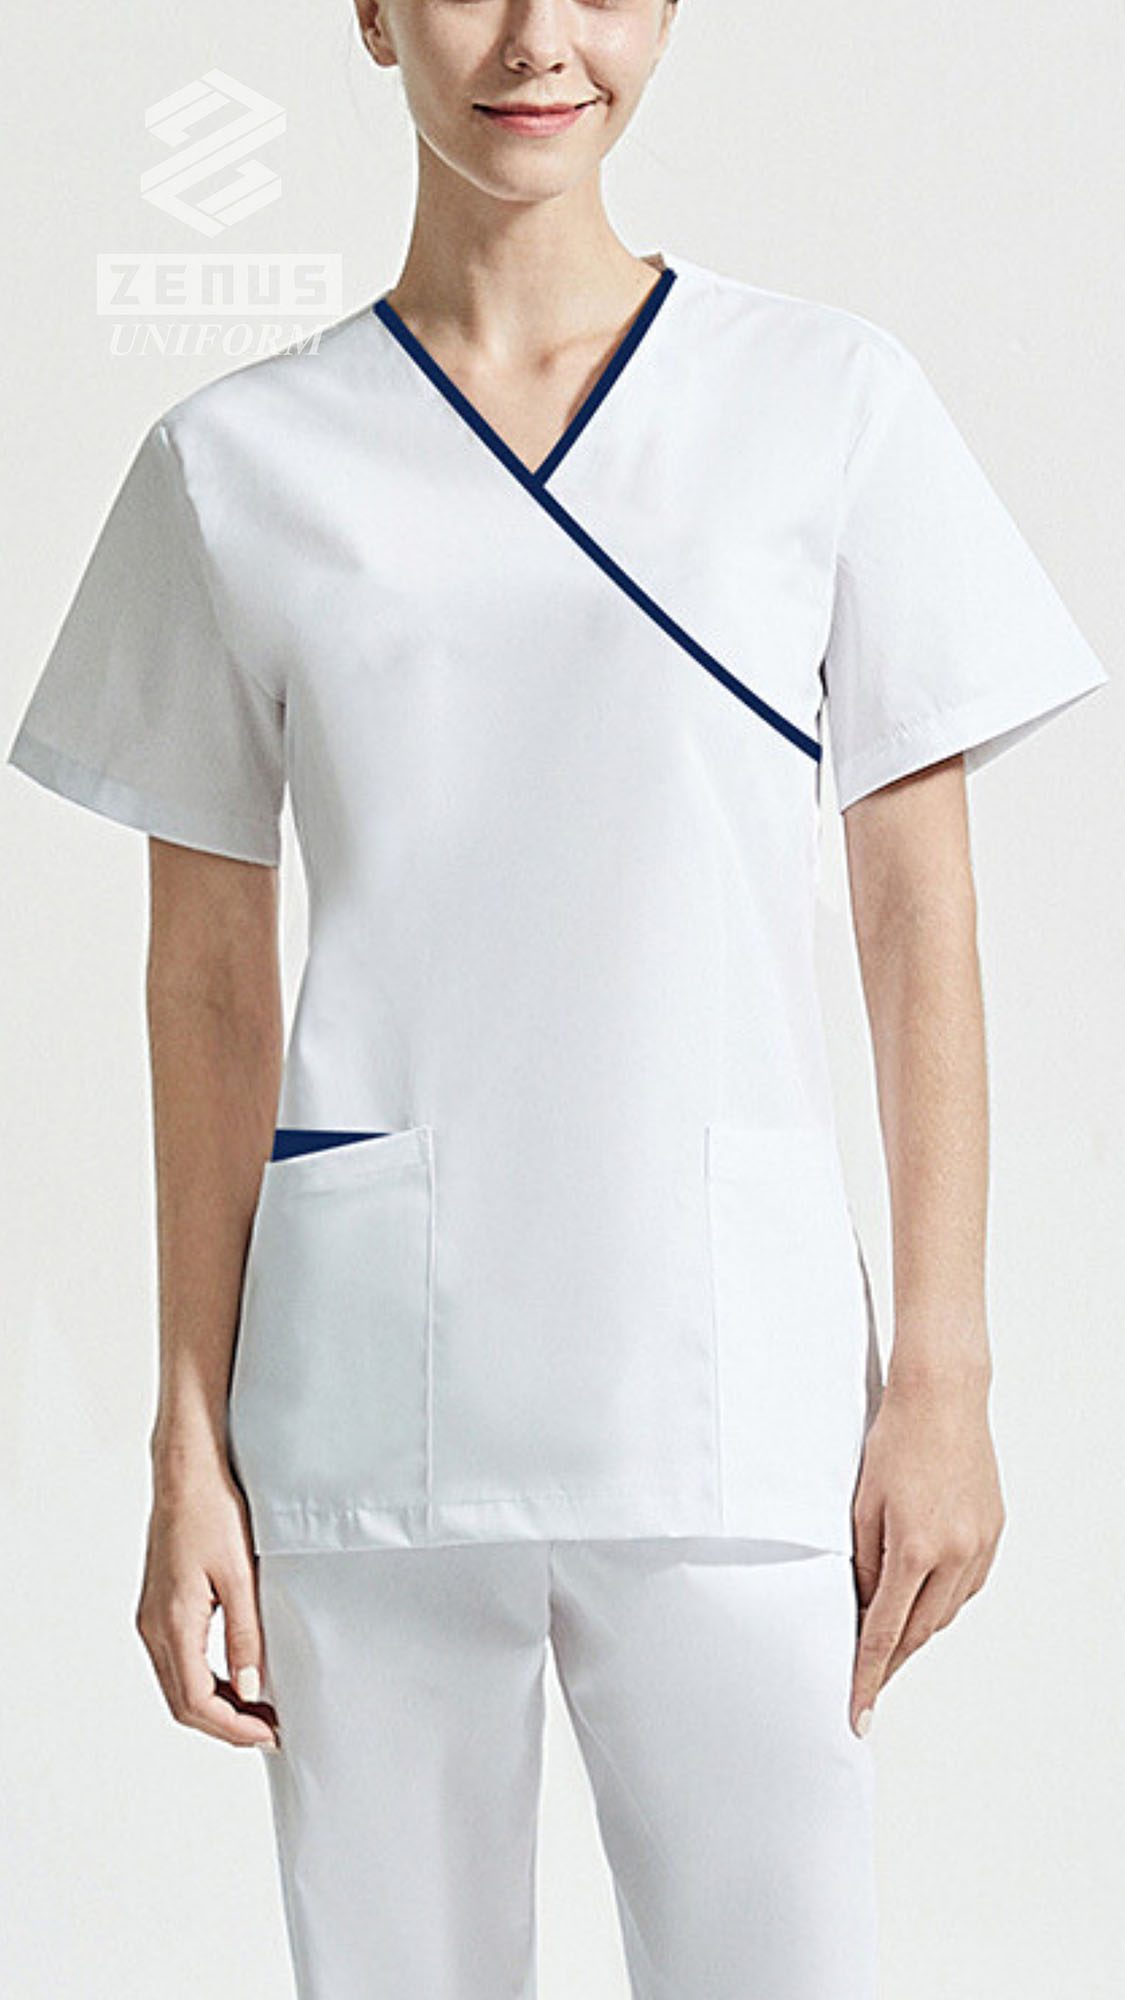 香港護士服, 護士服香港, 香港護士製服 -pic10